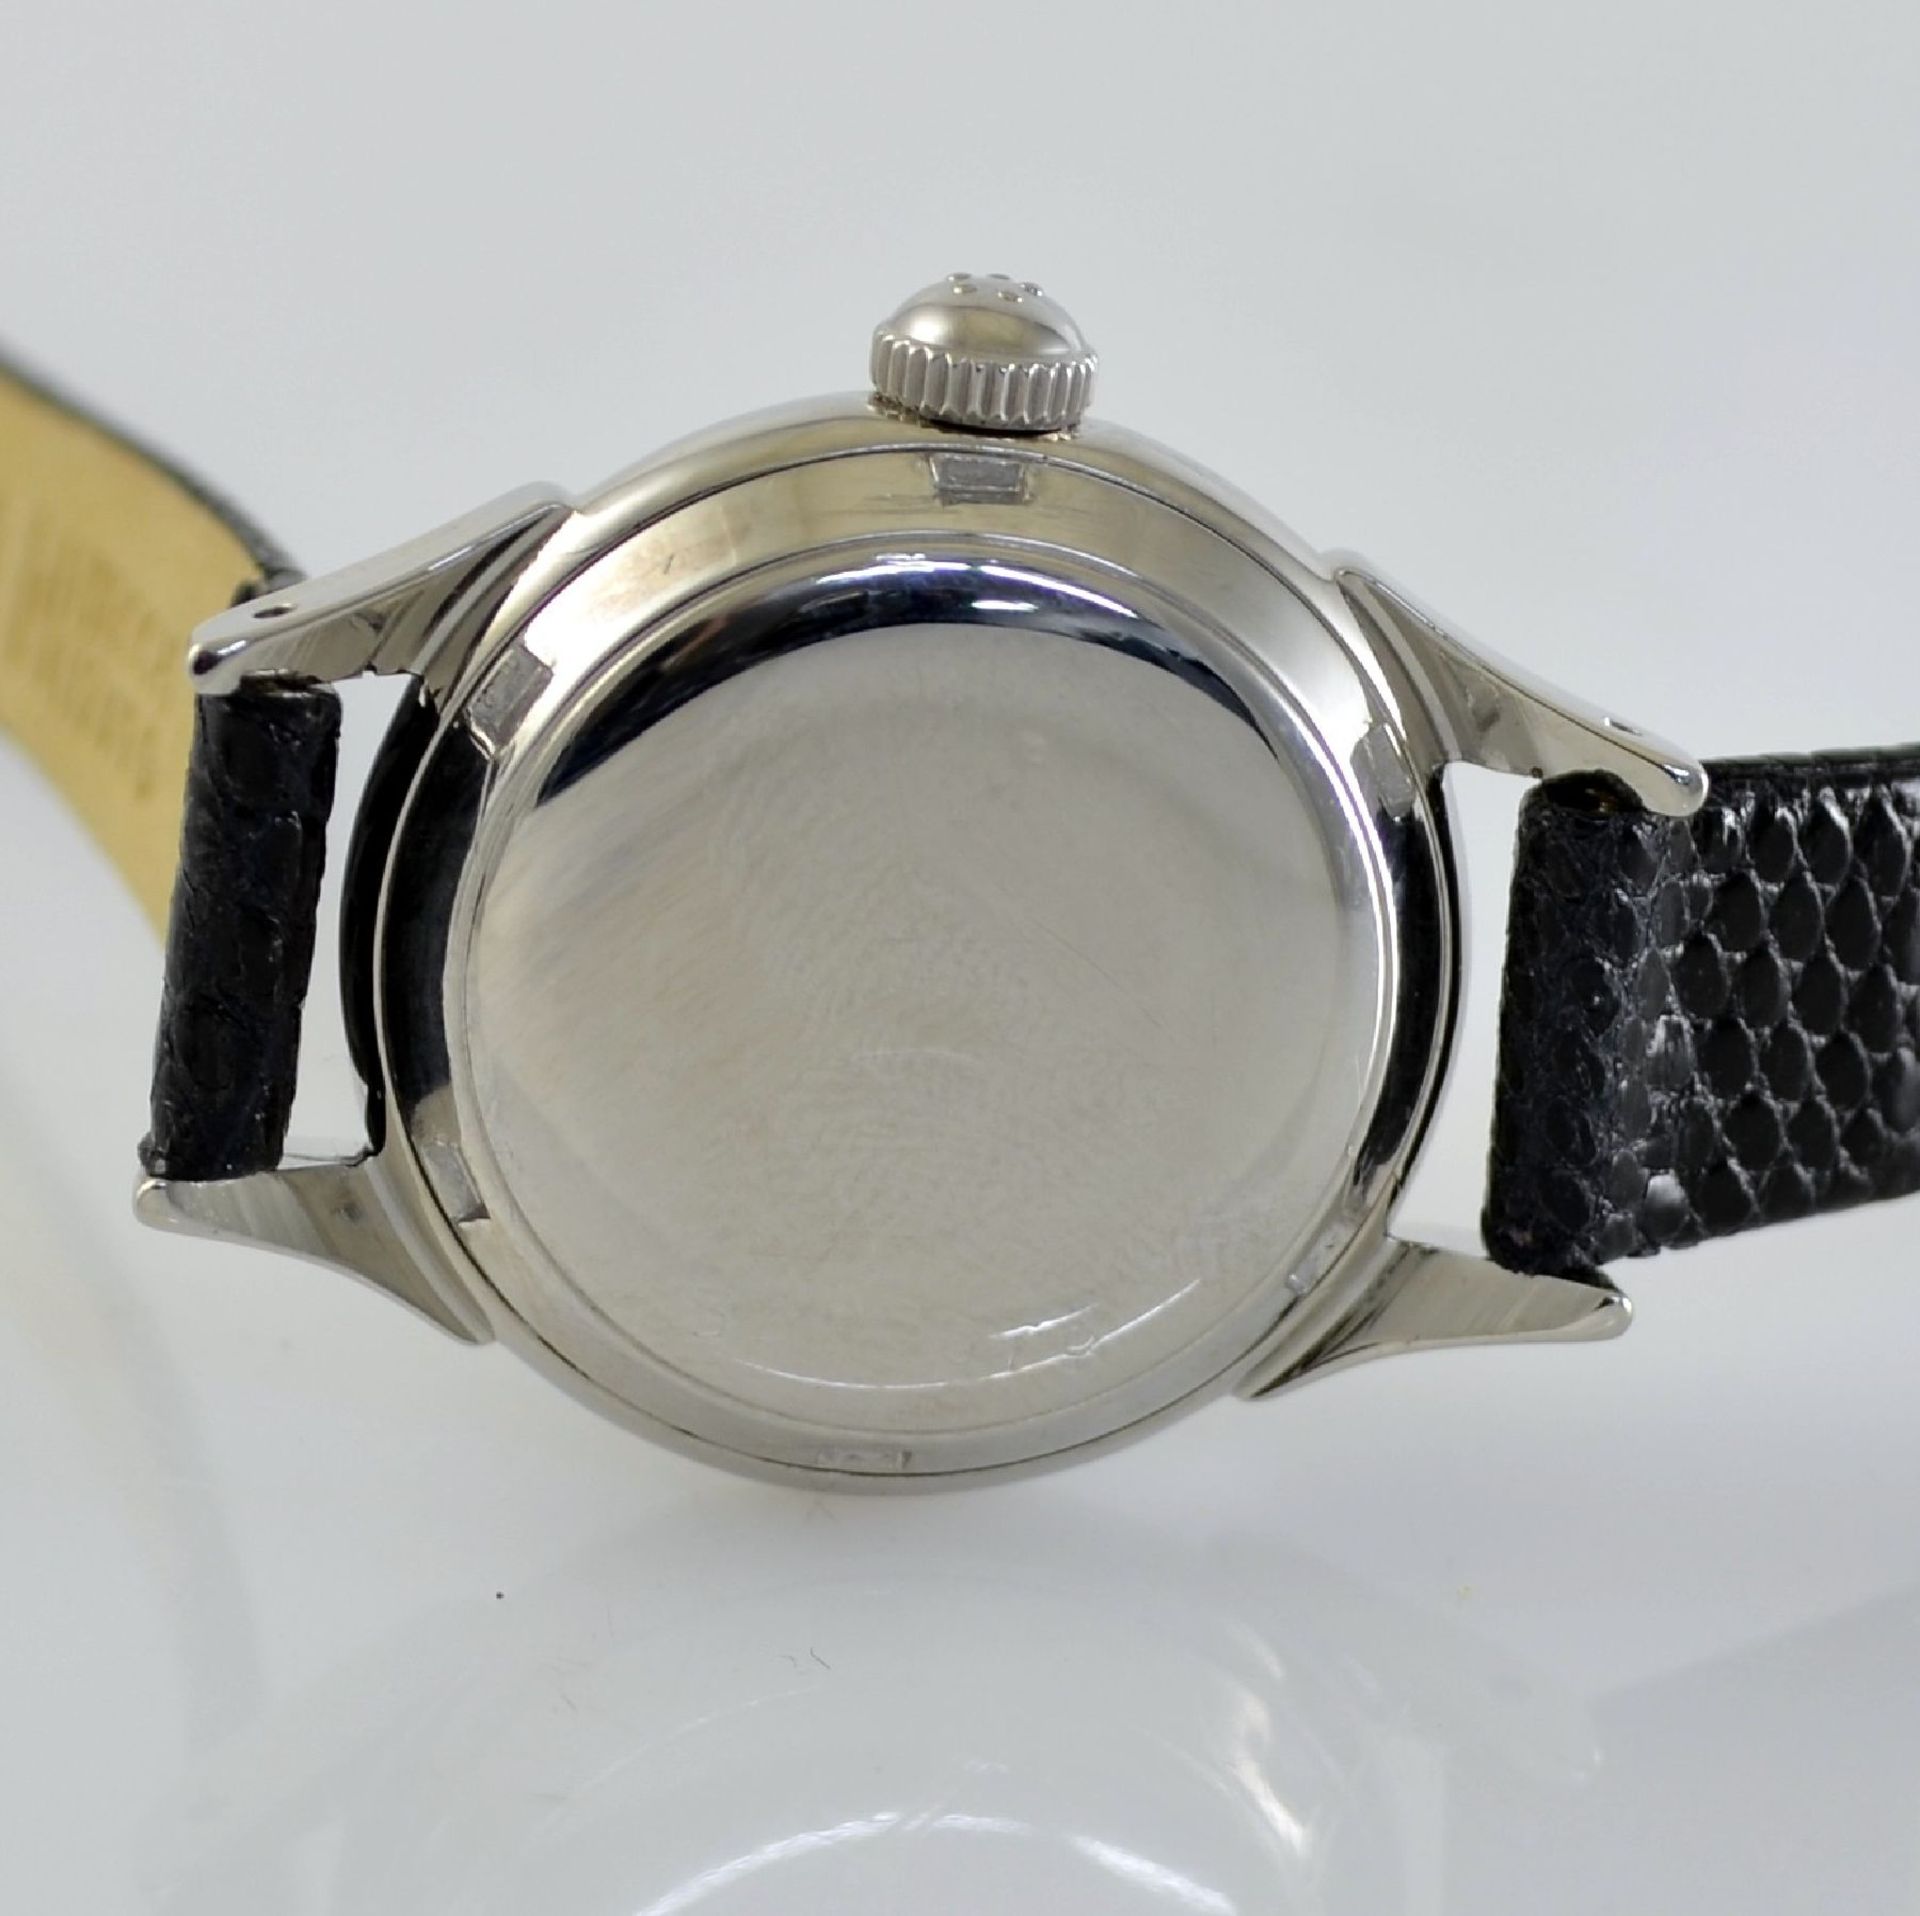 ETERNA-MATIC 2 wristwatches in steel, Switzerland around 1950, screwed down cases with unusual lugs, - Bild 11 aus 13